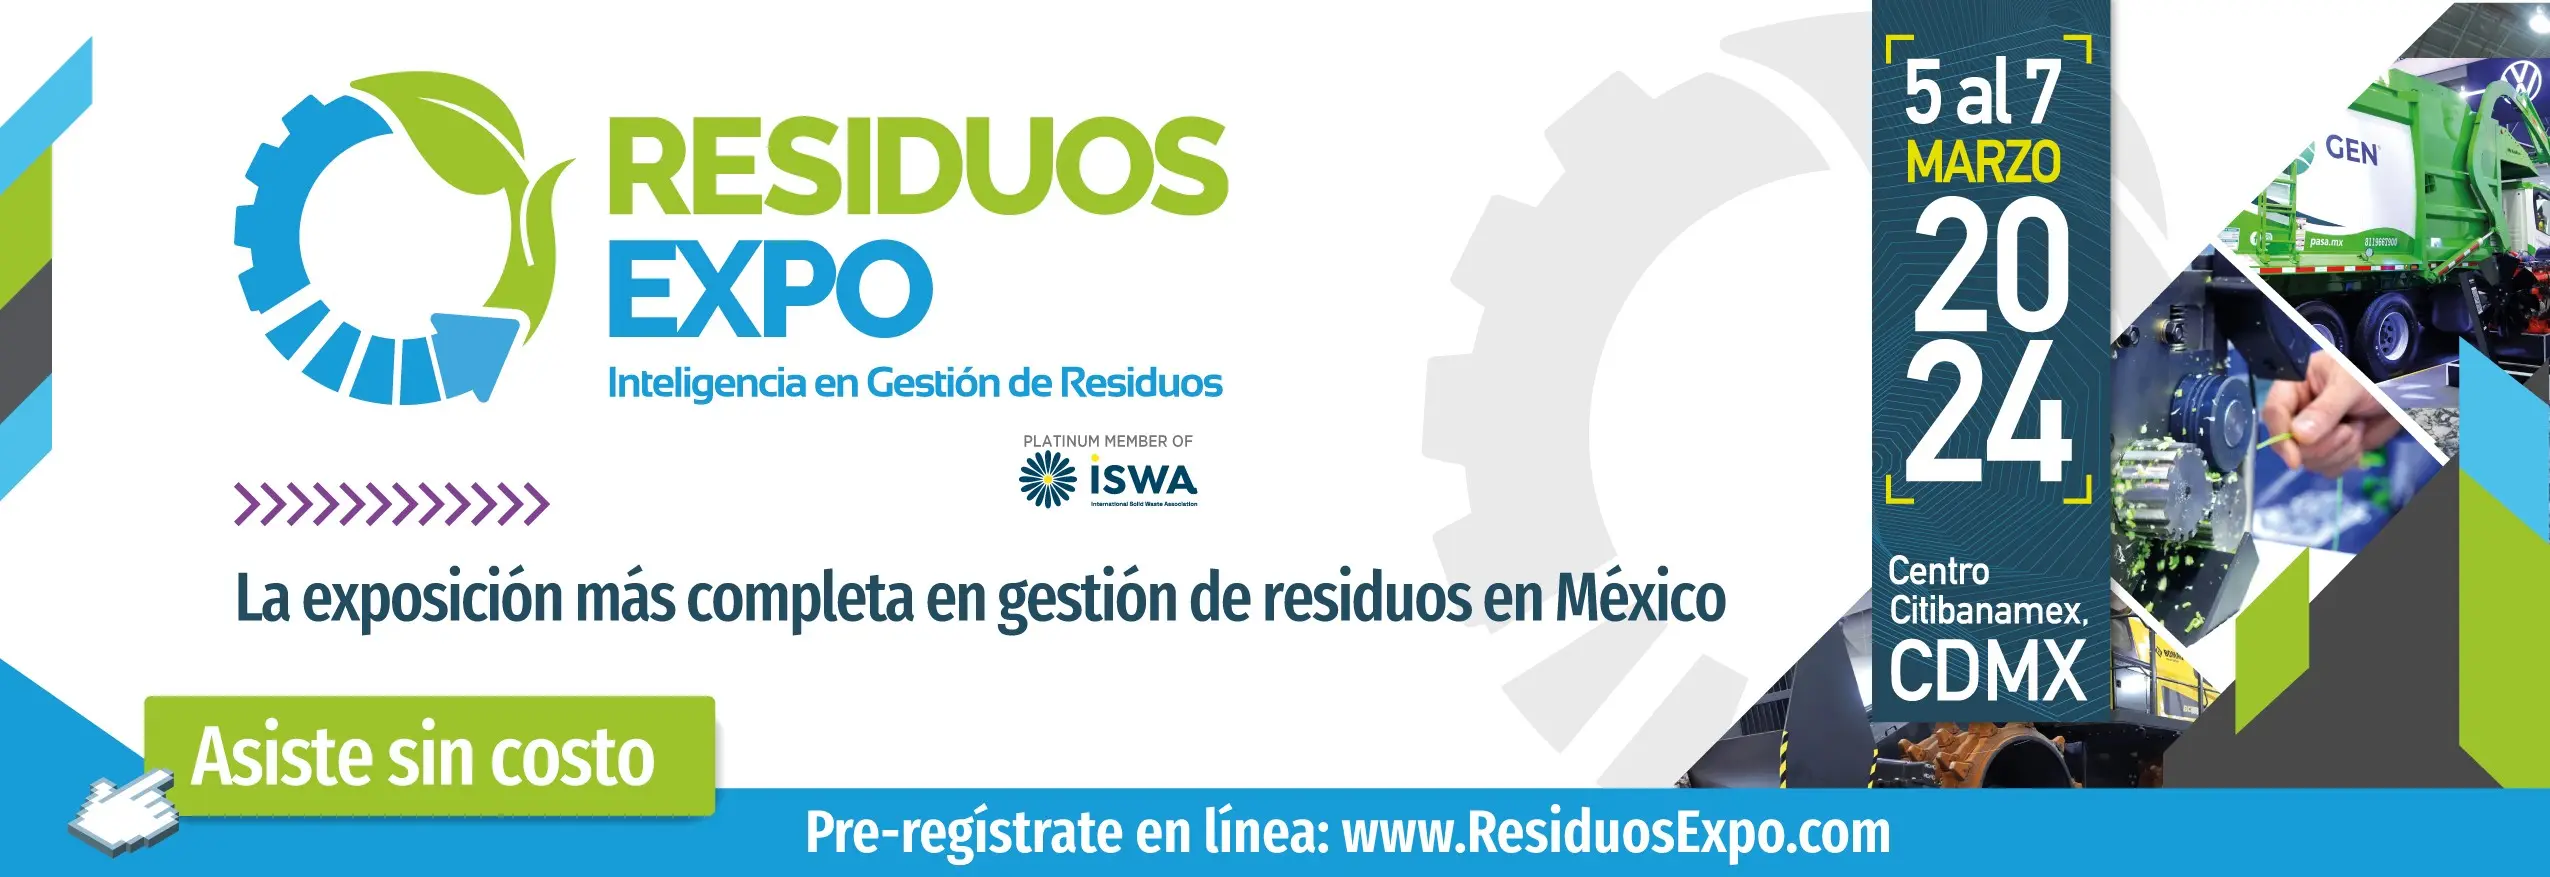 RESIDUOS EXPO La exposición 100% especializada en la gestión de residuos en México